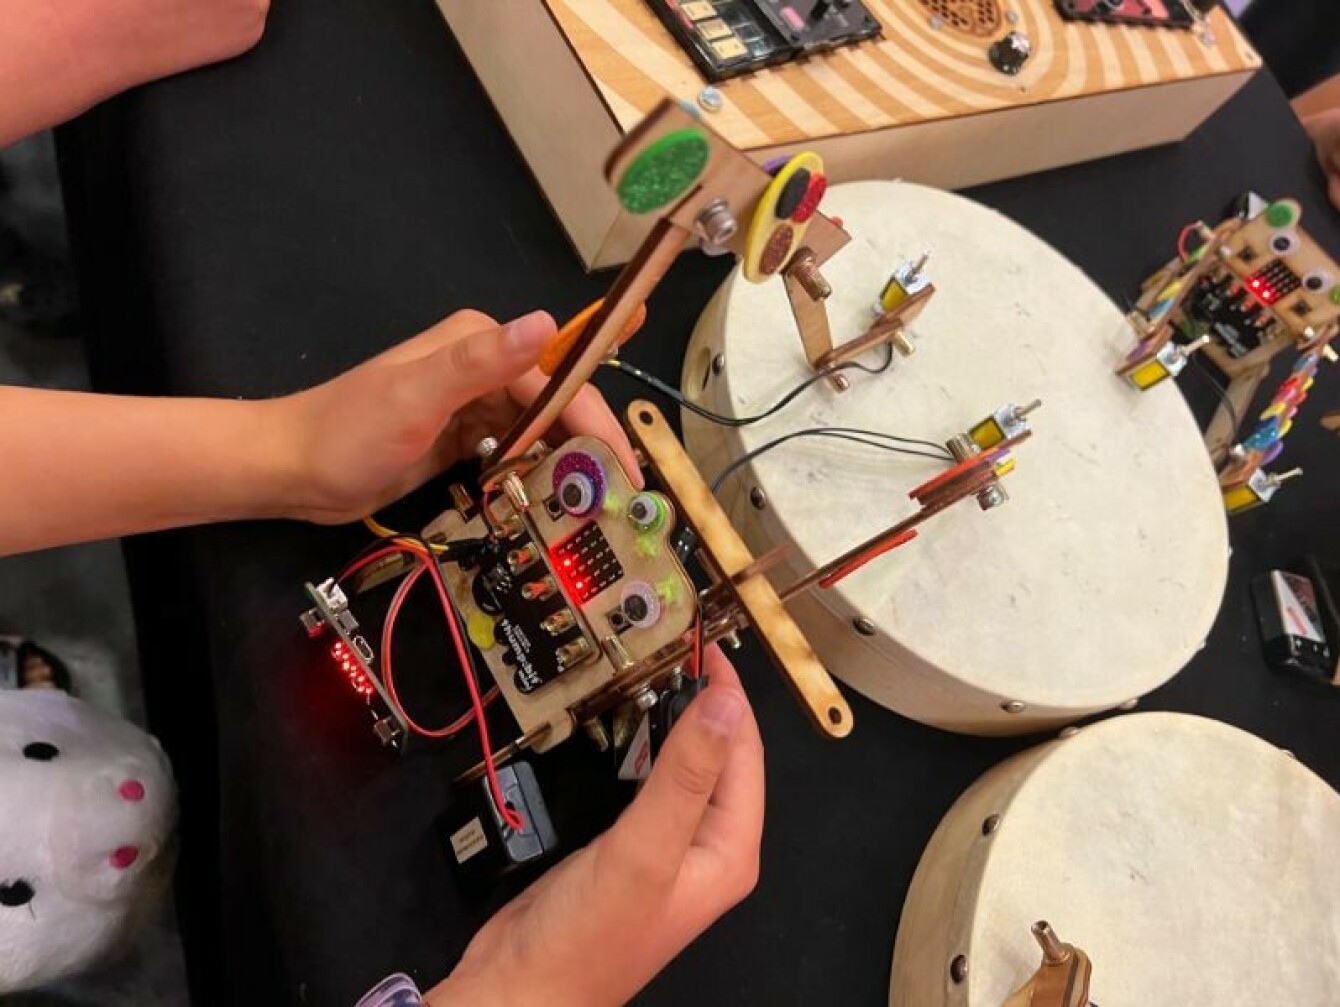 Captain Credible holder workshops der både barn og voksne kan lære om kreativ programmering, som her å bygge en trommerobot. 📸: Daniel Lacey-McDermott